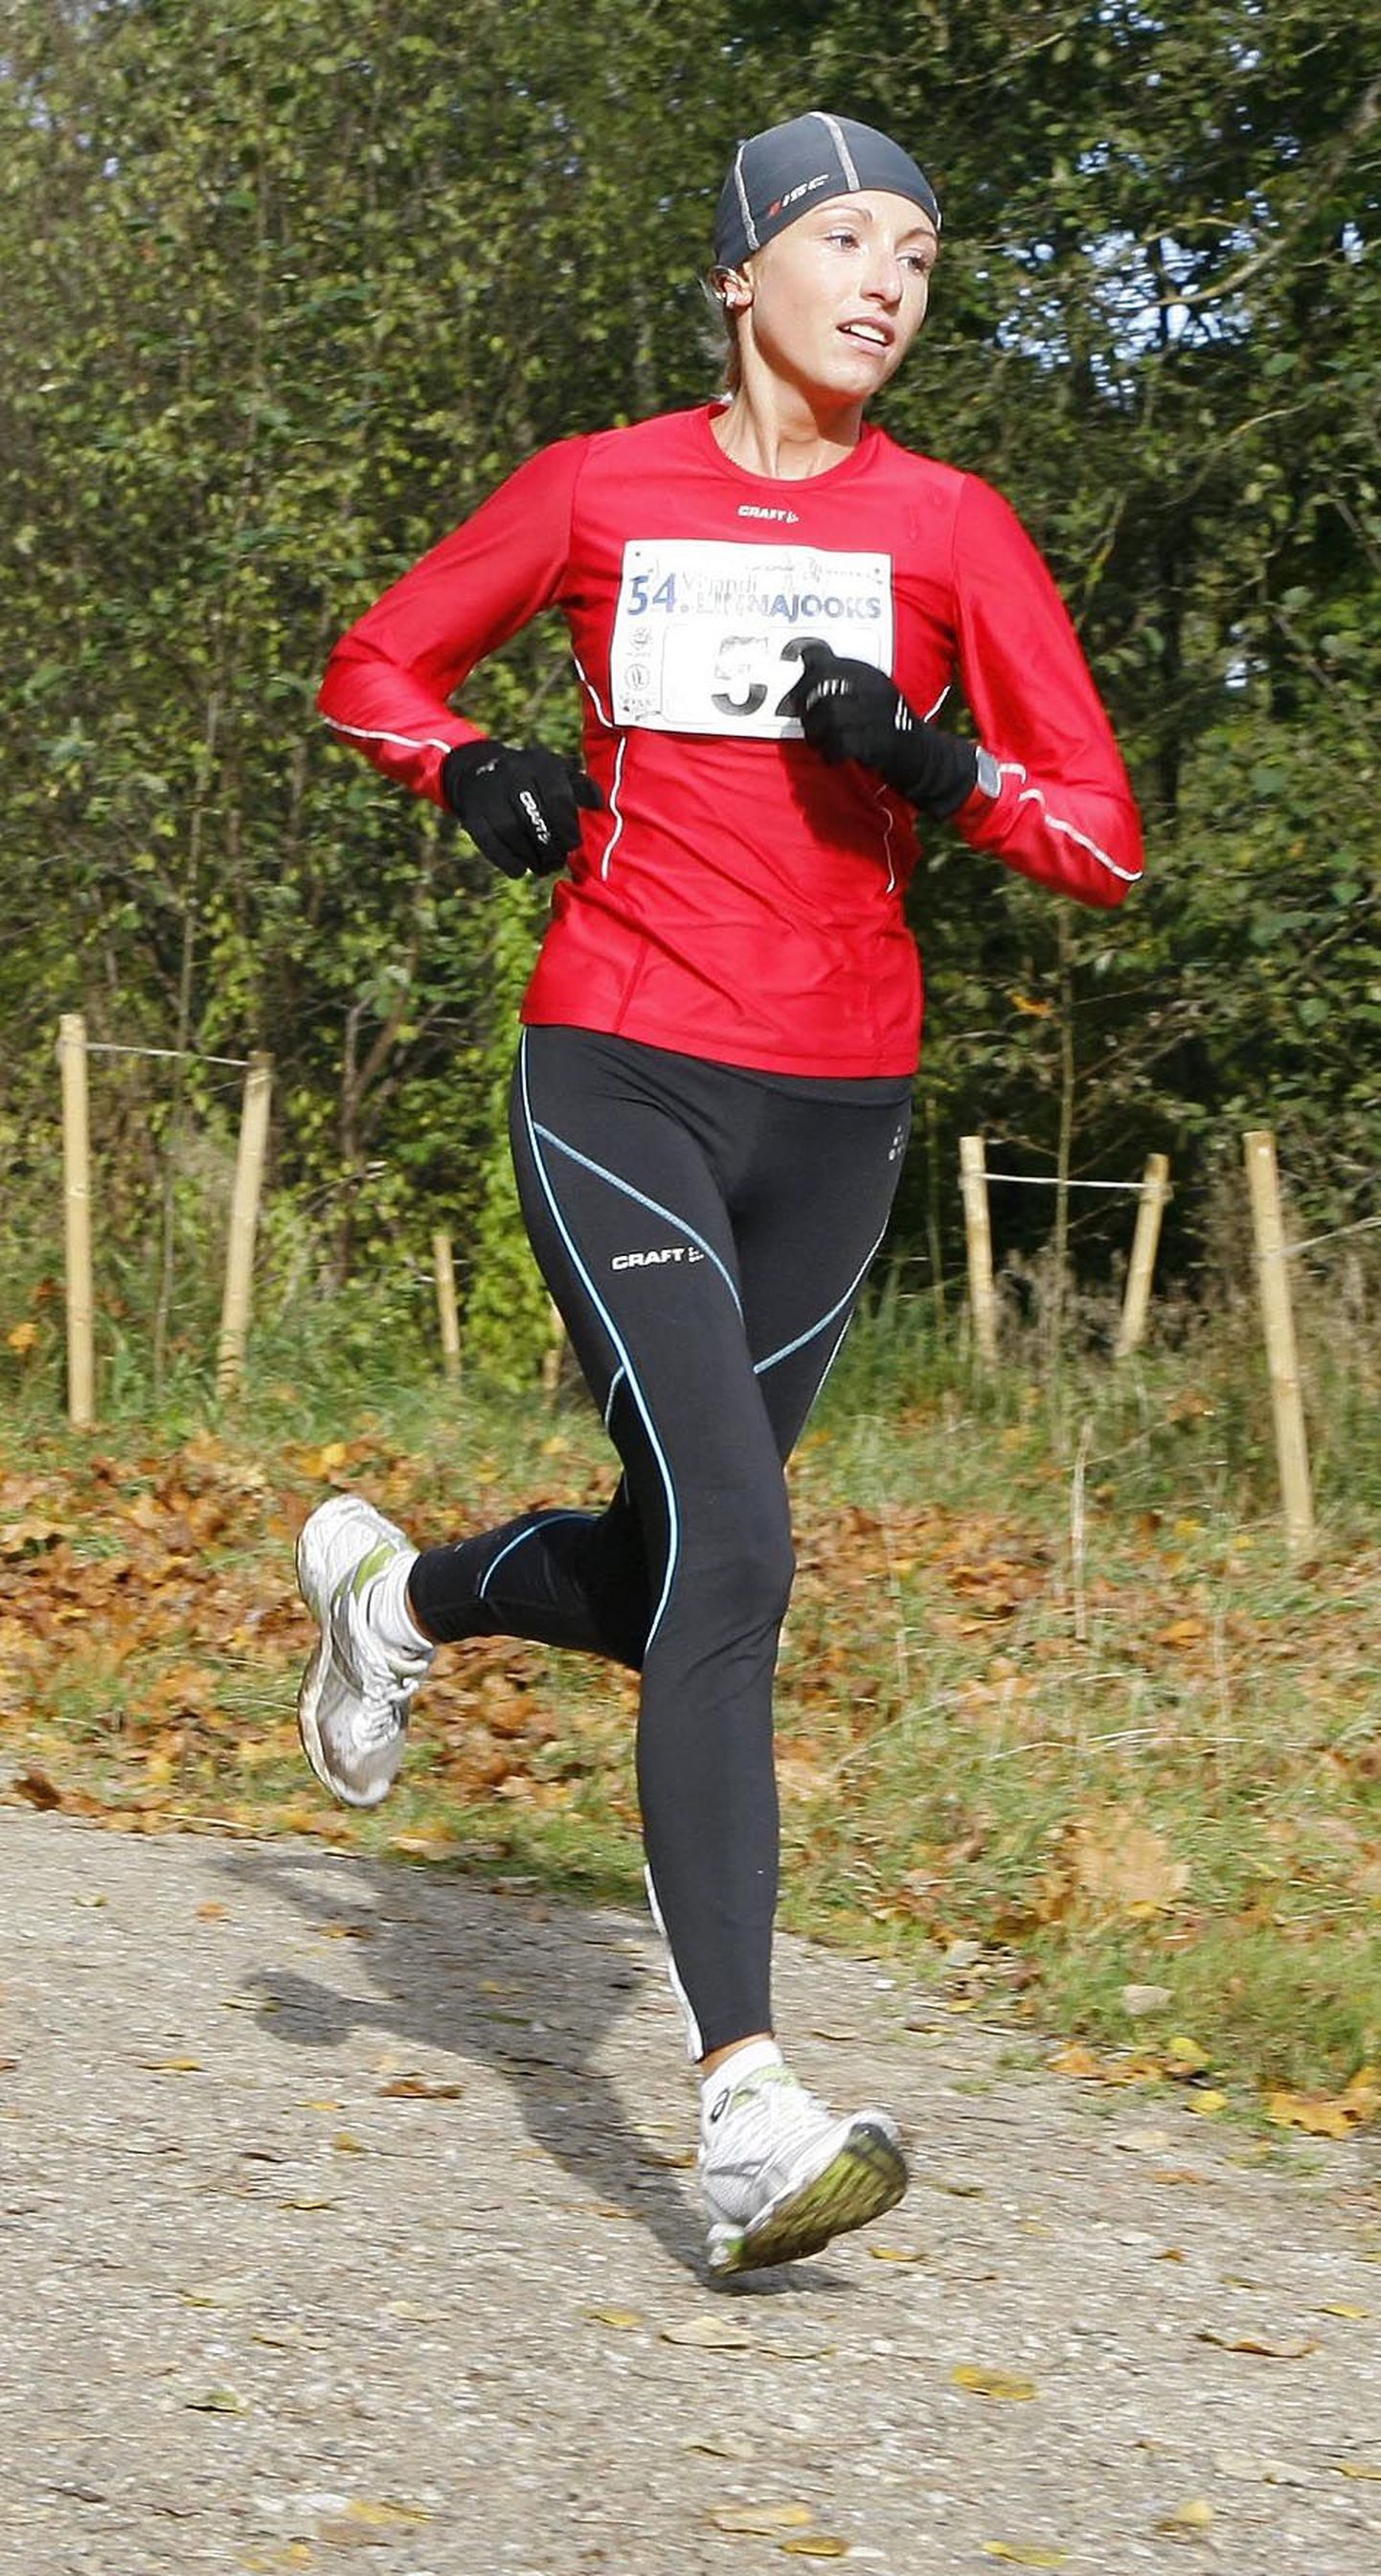 Viljandi klubisse Staier kuuluv Anneli Vaher oli Saaremaa Kolme Päeva jooksus naiste arvestuses teine. Pilt on tehtud Viljandi linna jooksul.